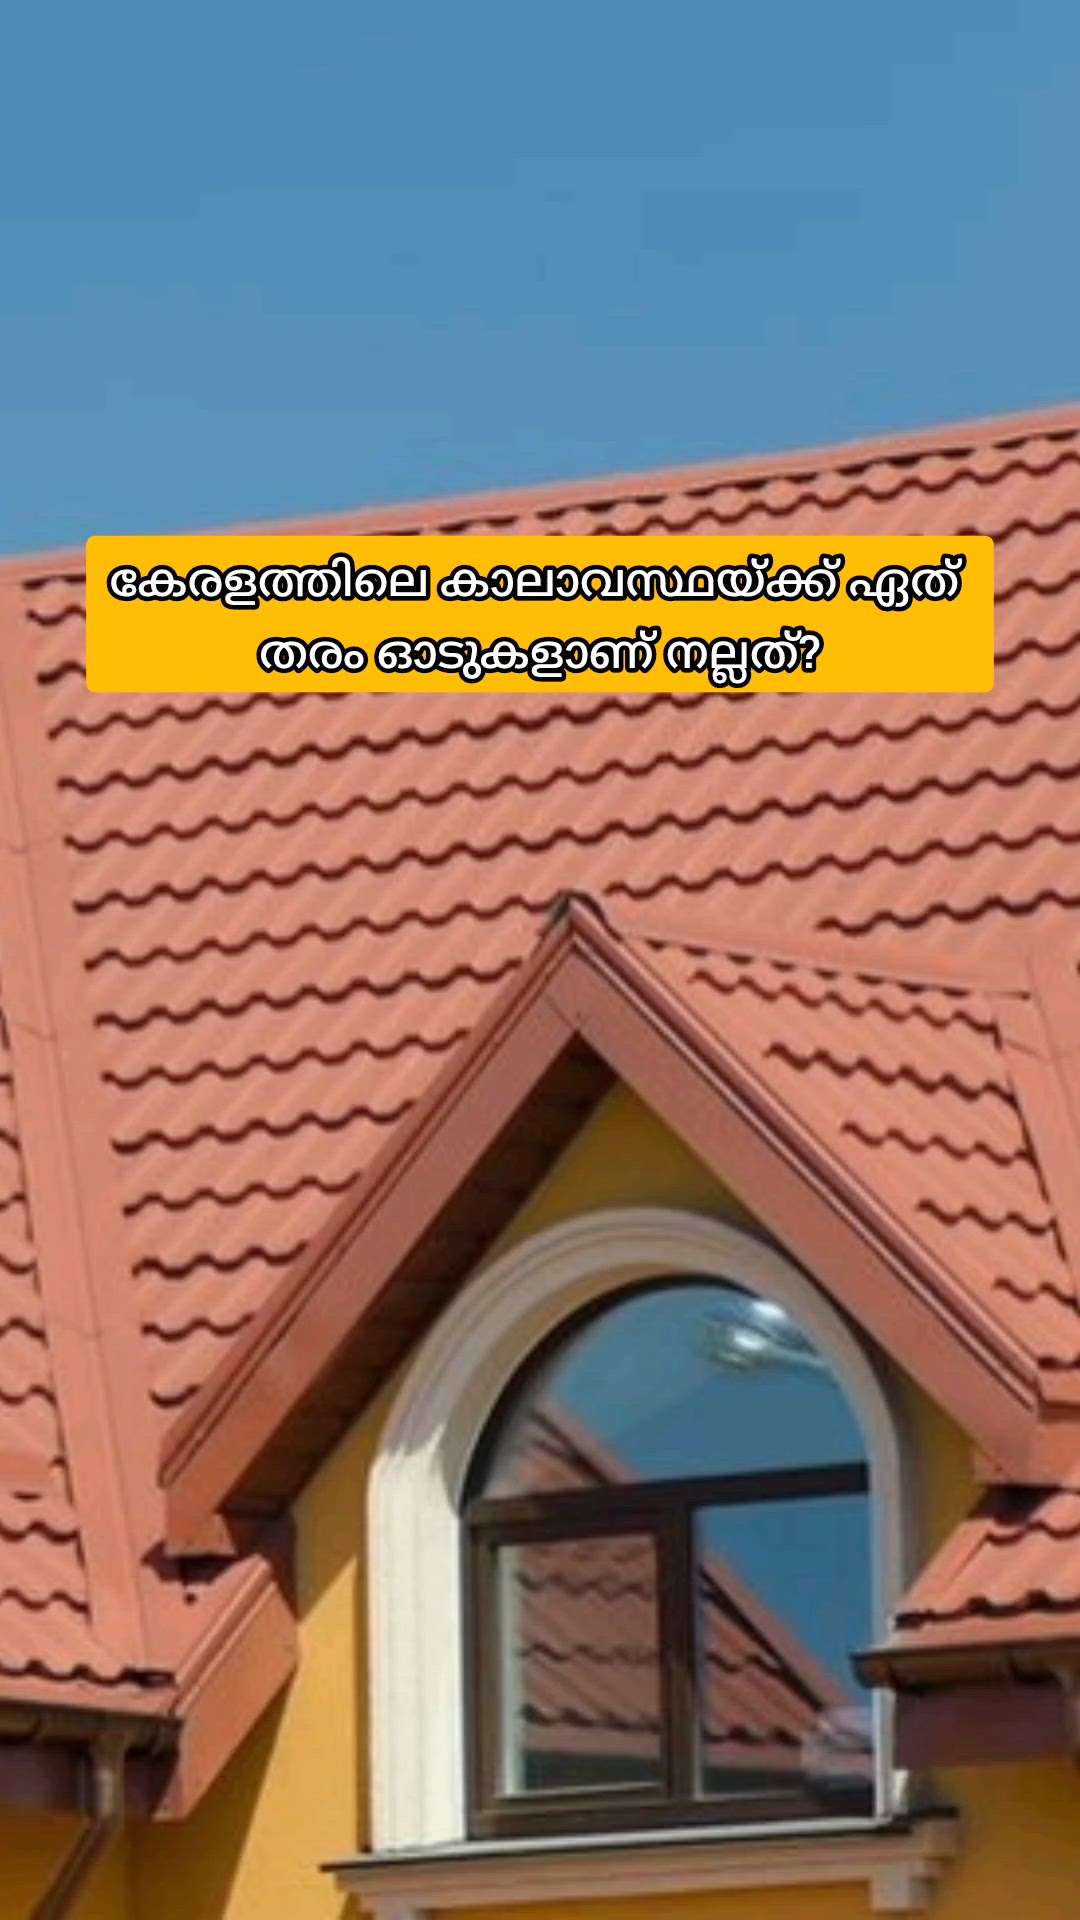 കേരളത്തിലെ കാലാവസ്ഥക് ഏത് റൂഫിങ് ടൈലുകൾ ആണ് മികച്ചത്?

#creatorsofkolo #roofing #Kerala #bestroofing